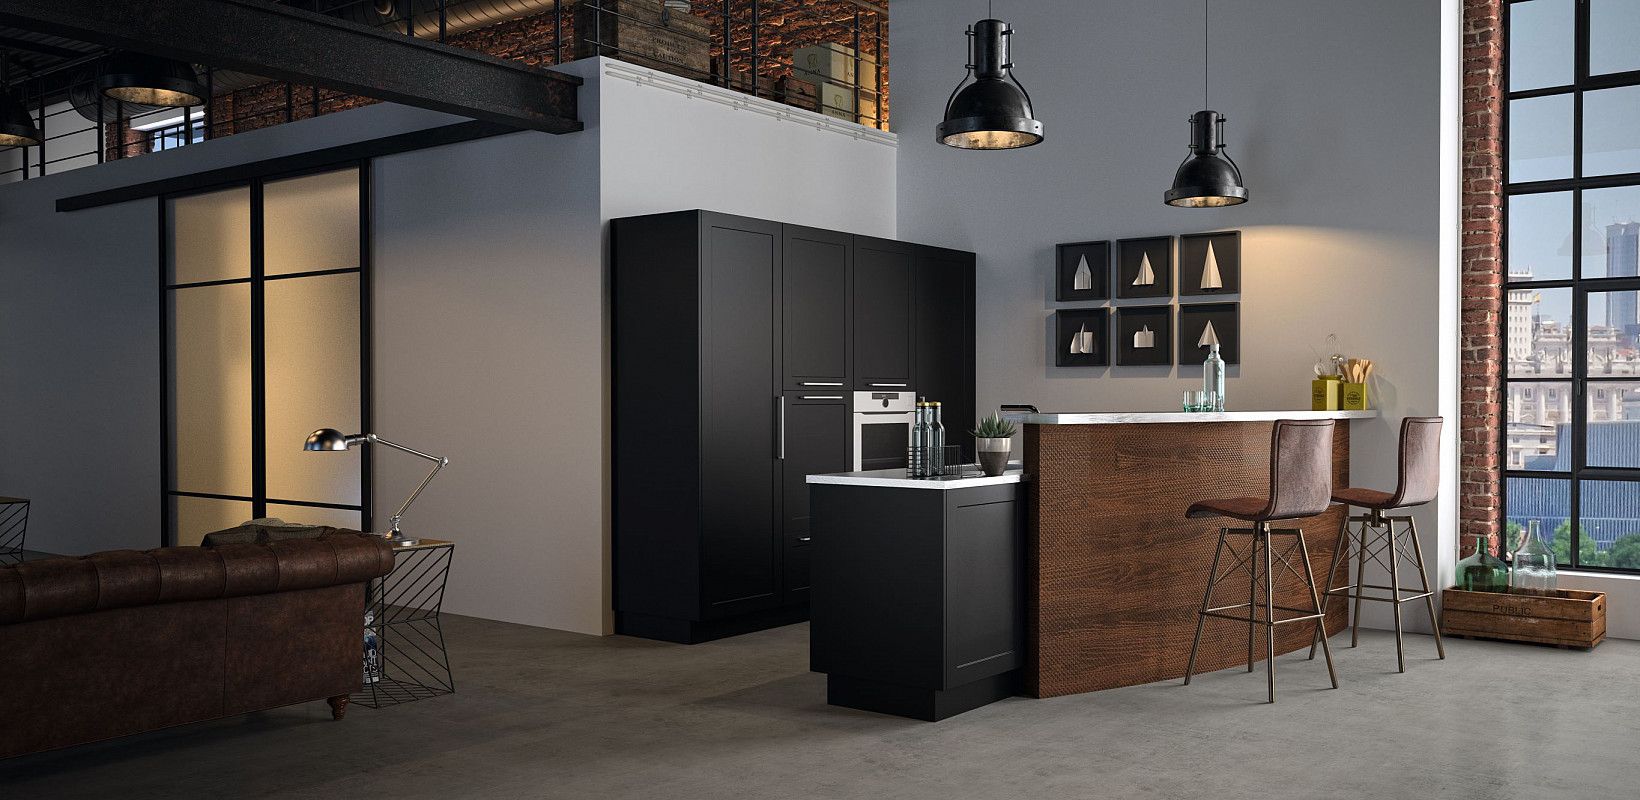 طراحی دکوراسیون سه آشپزخانه شیک و مدرن